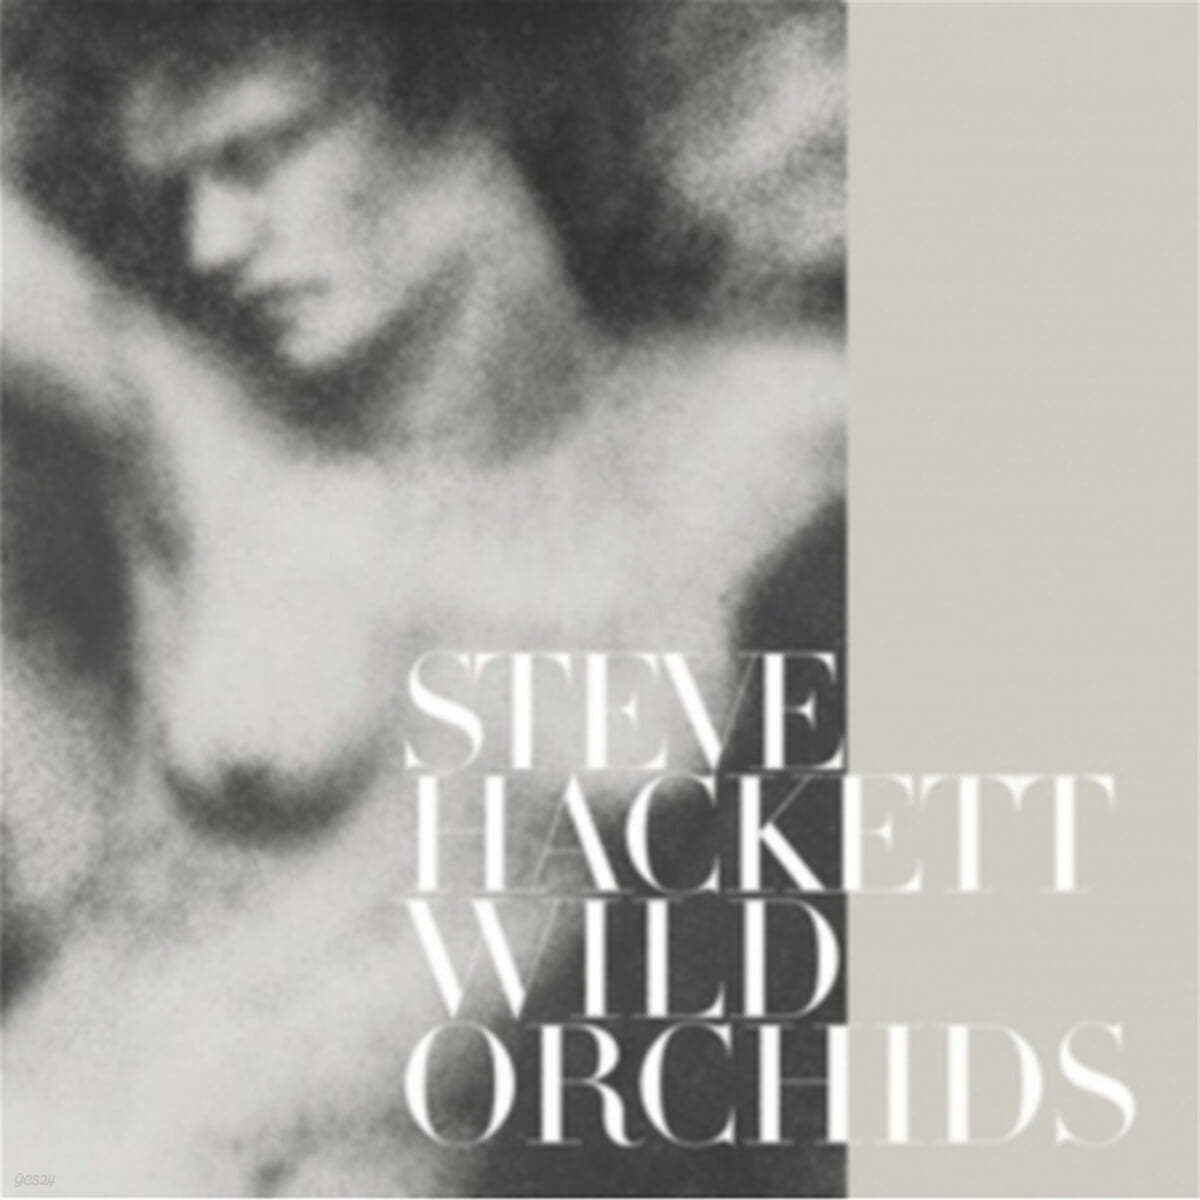 Steve Hackett (스티브 해킷) - Wild Orchids [2LP]